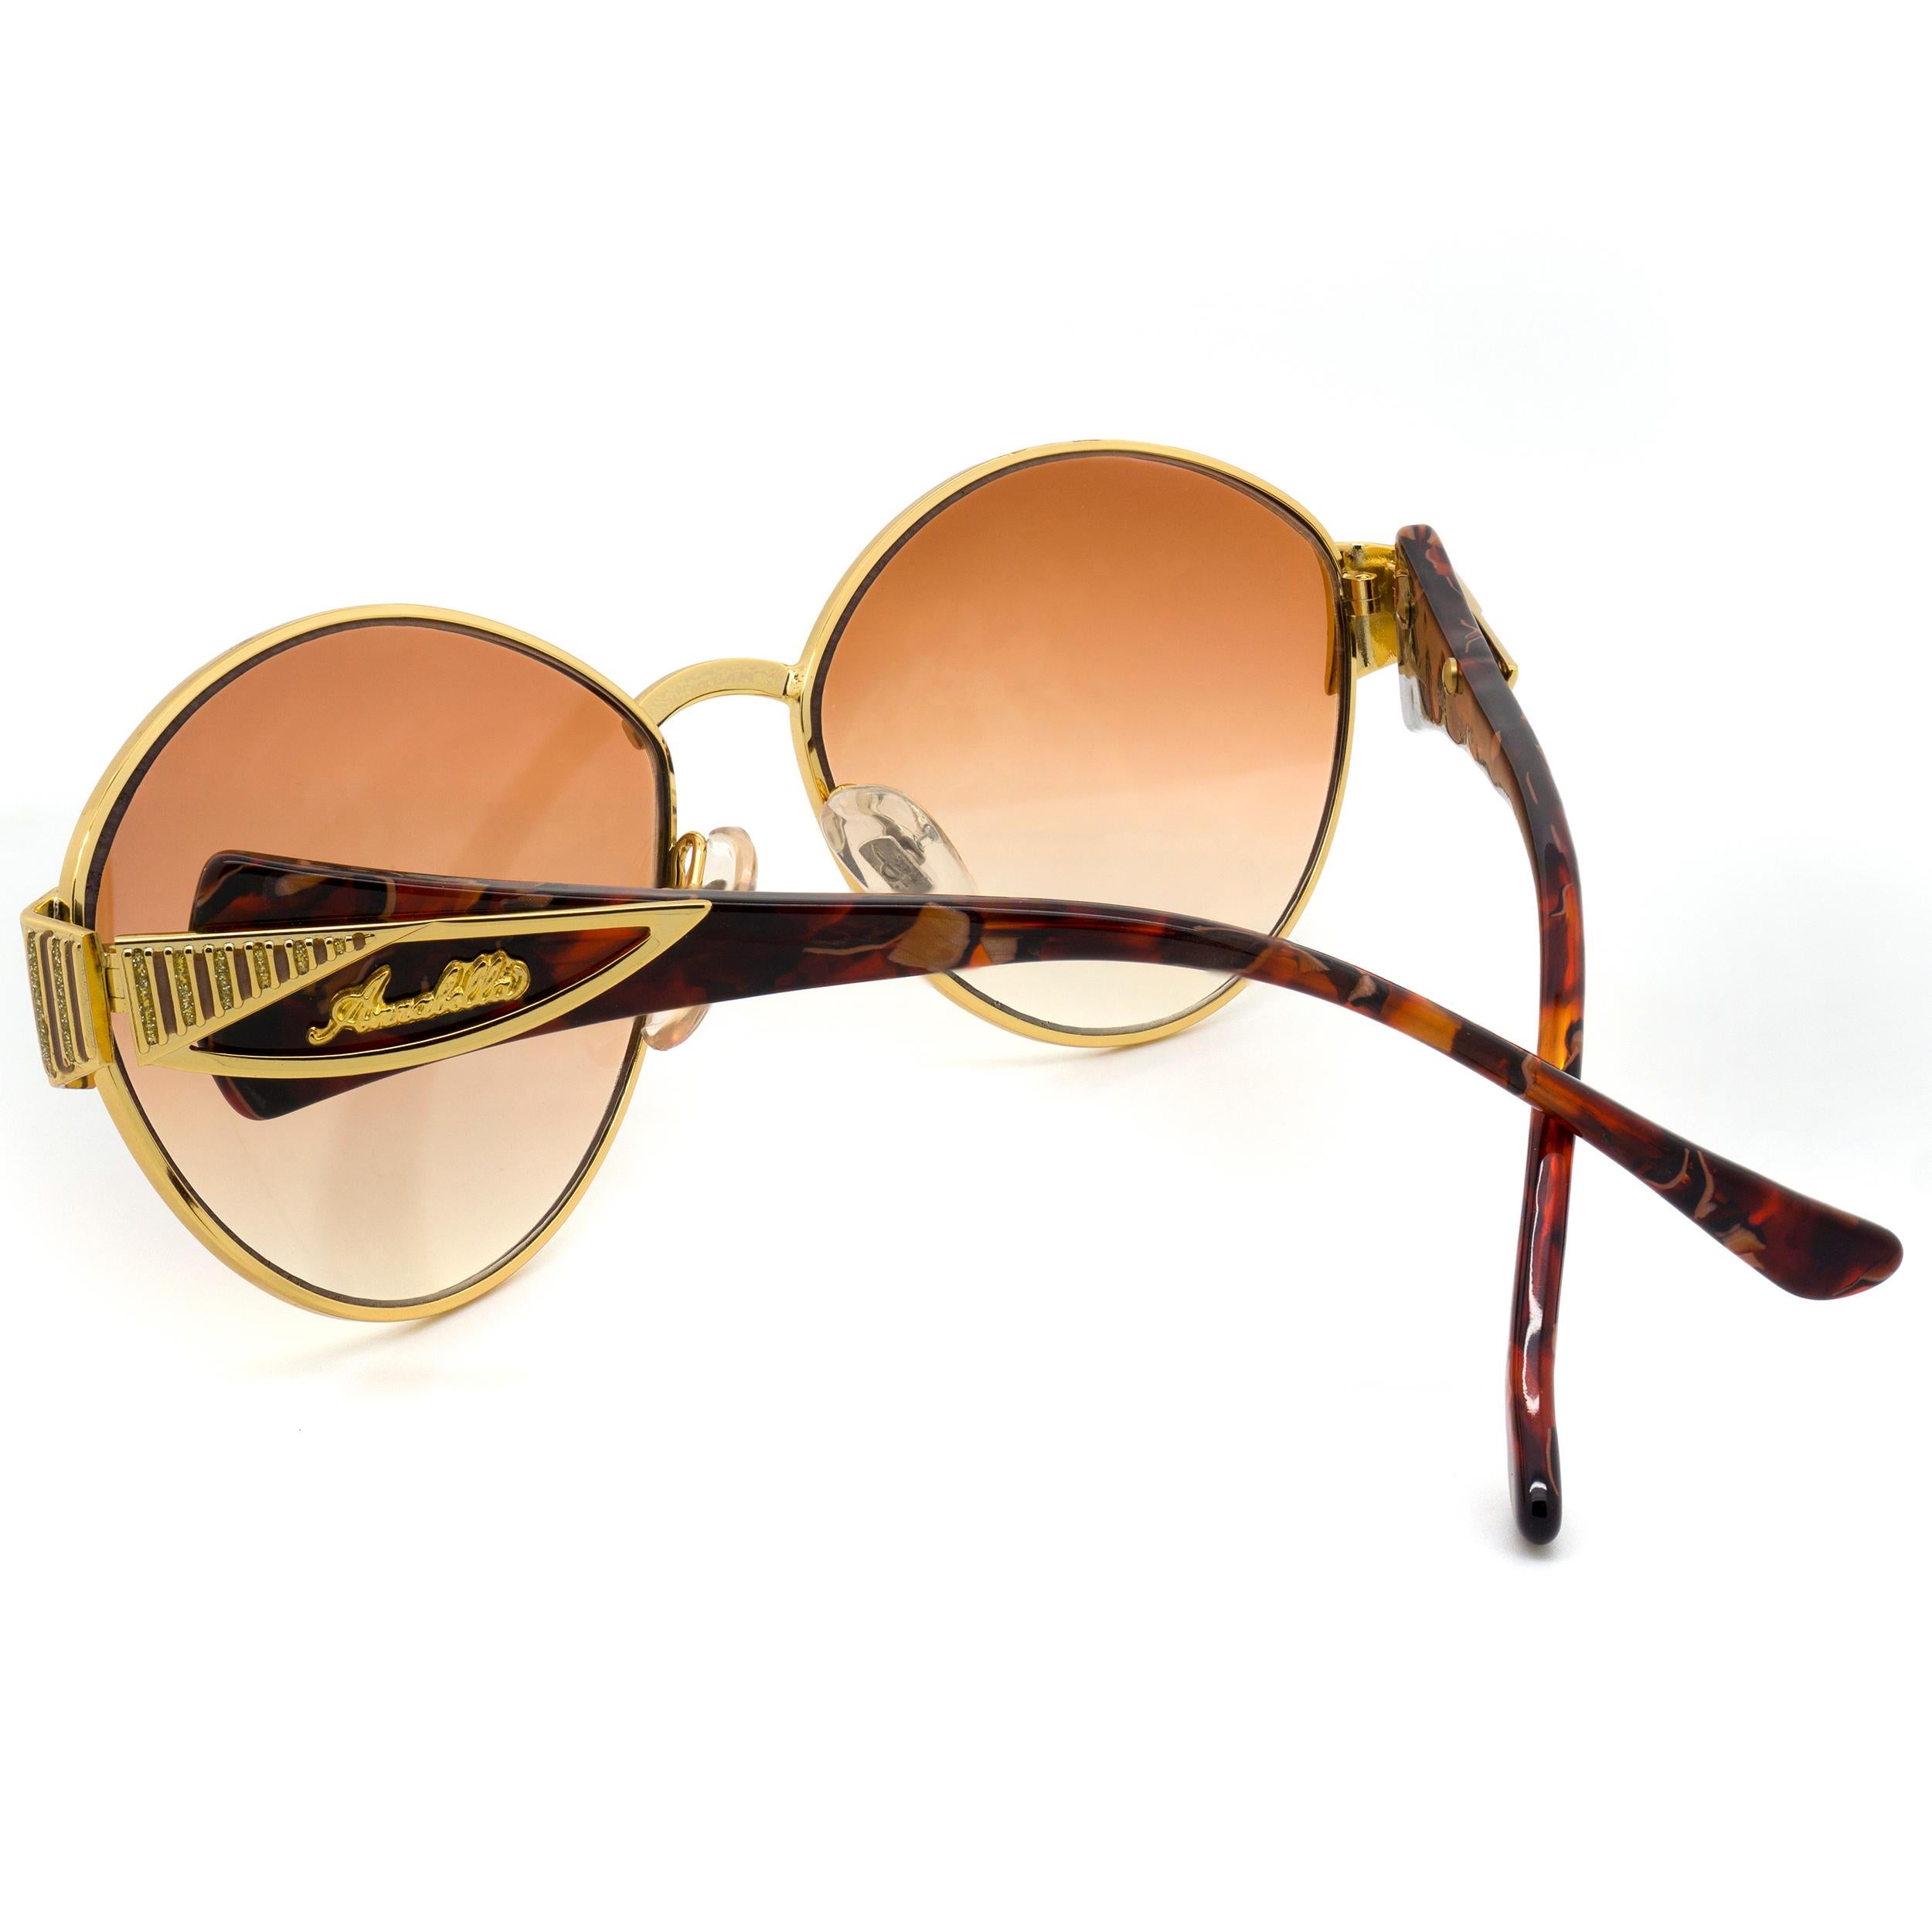 Simonetta Ravizza by Annabella 80s oversized vintage sunglasses In New Condition For Sale In Santa Clarita, CA